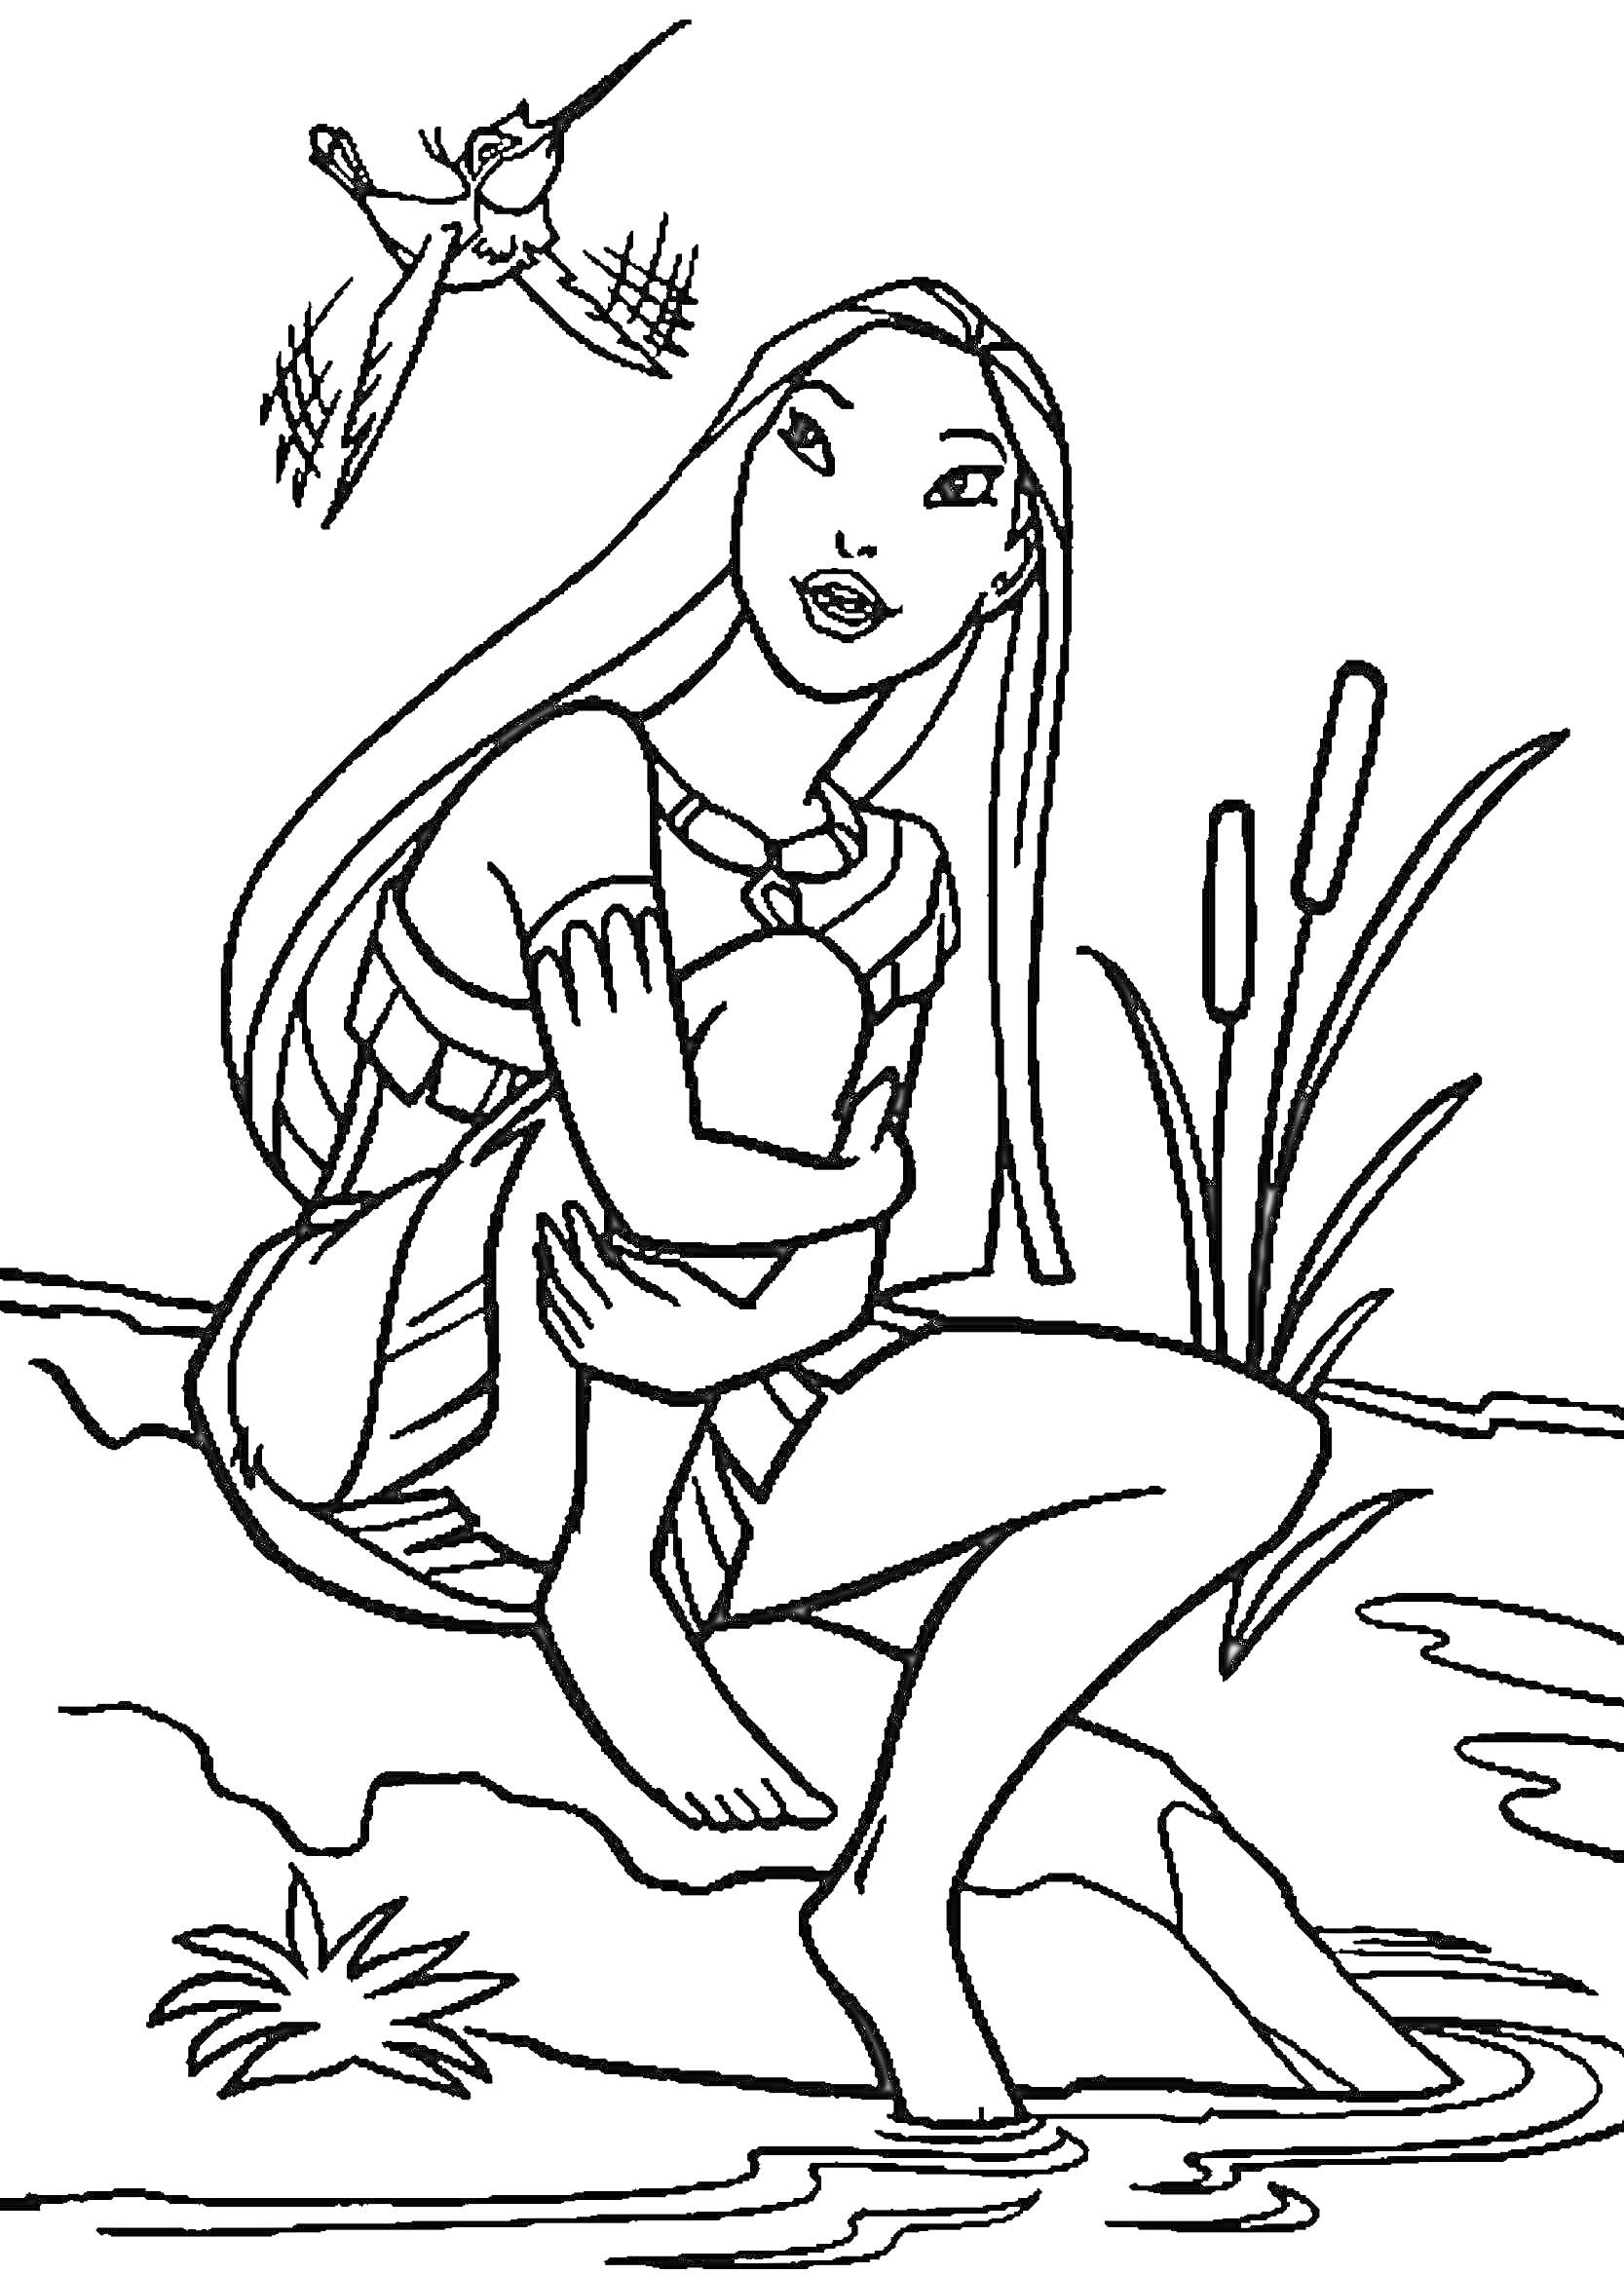 Раскраска Покахонтас сидит на берегу реки со скрещенными руками и ногами, рядом с растениями, над ней летает колибри